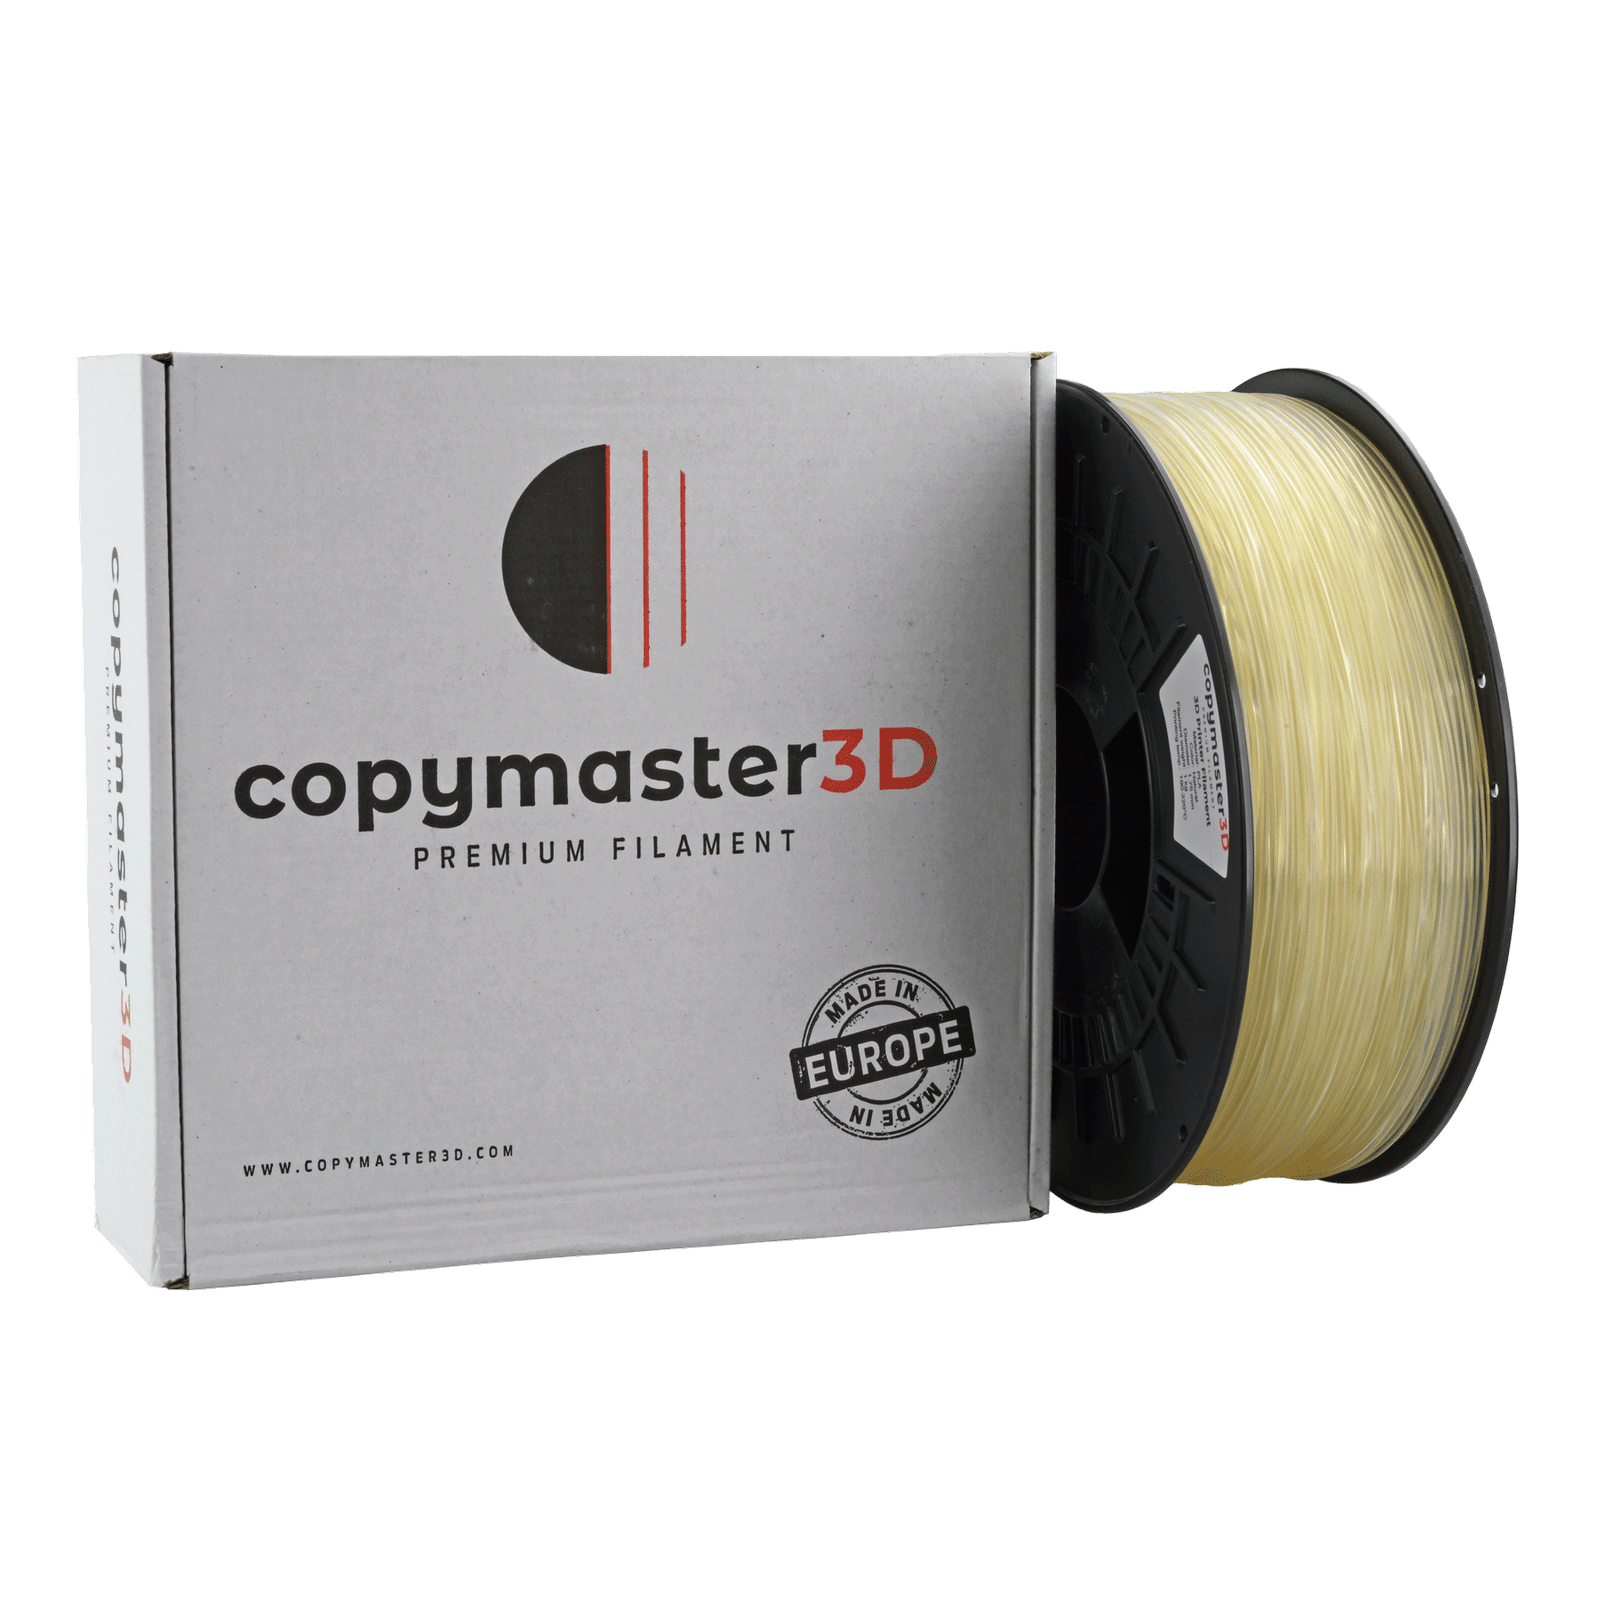 Copymaster3D Premium PLA Filament 1.75mm 1KG Natural